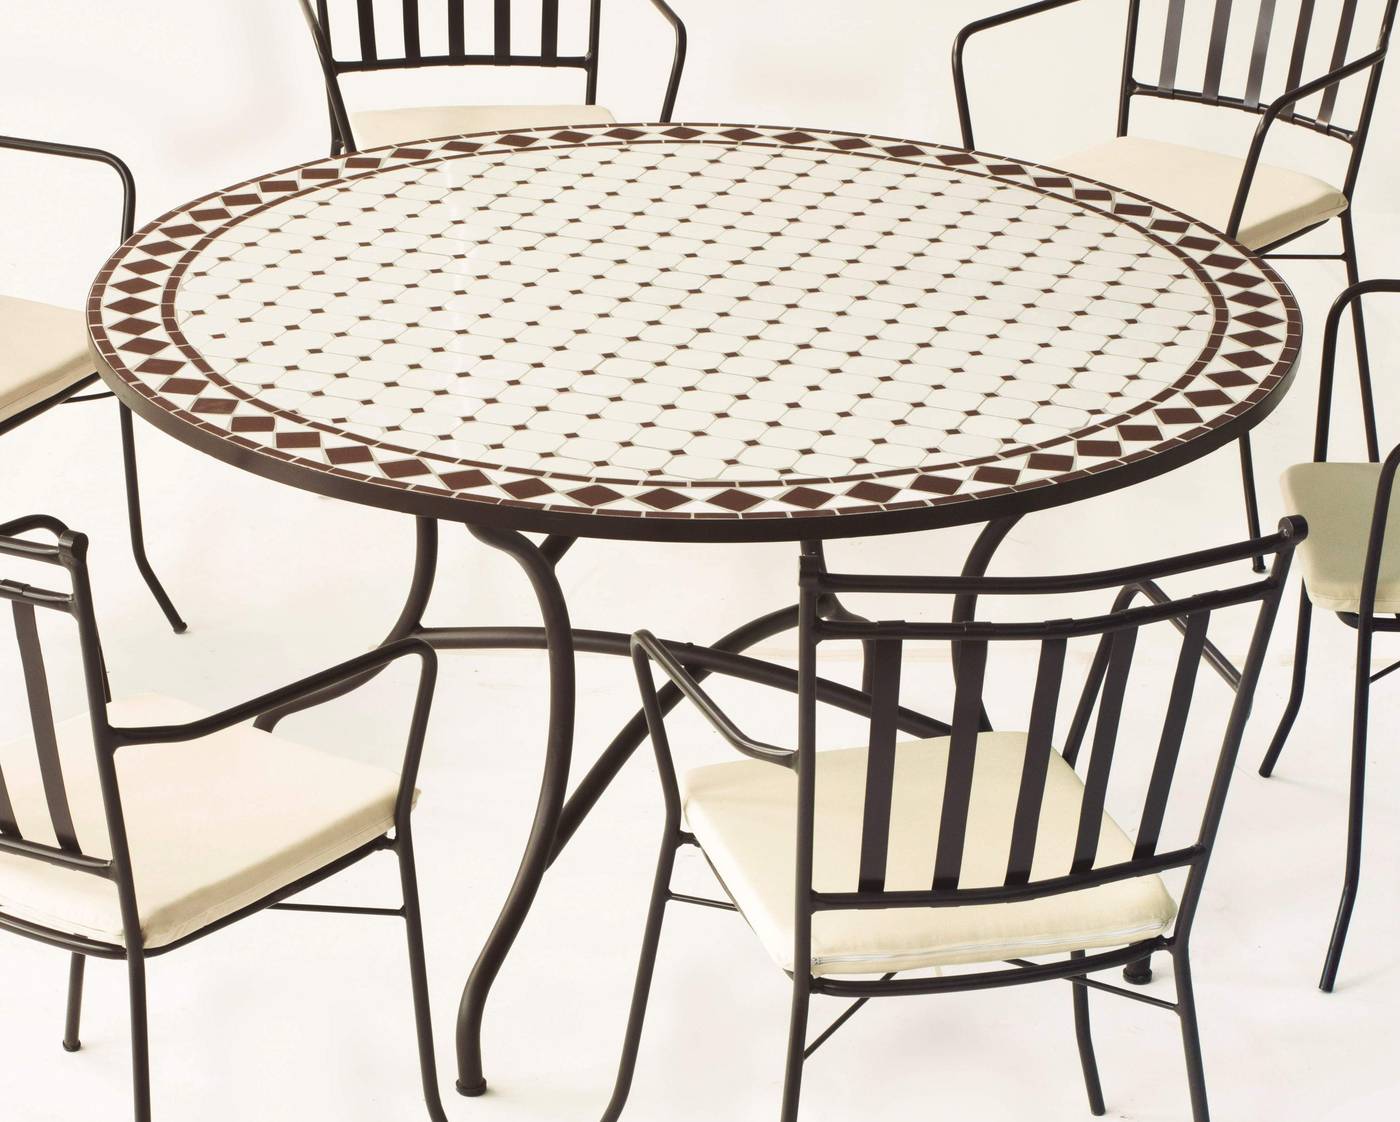 Conjunto Mosaico Zaira140-Shifa - Conjunto de forja color bronce: mesa con tablero mosaico de 140 cm + 6 sillones con cojines asiento.